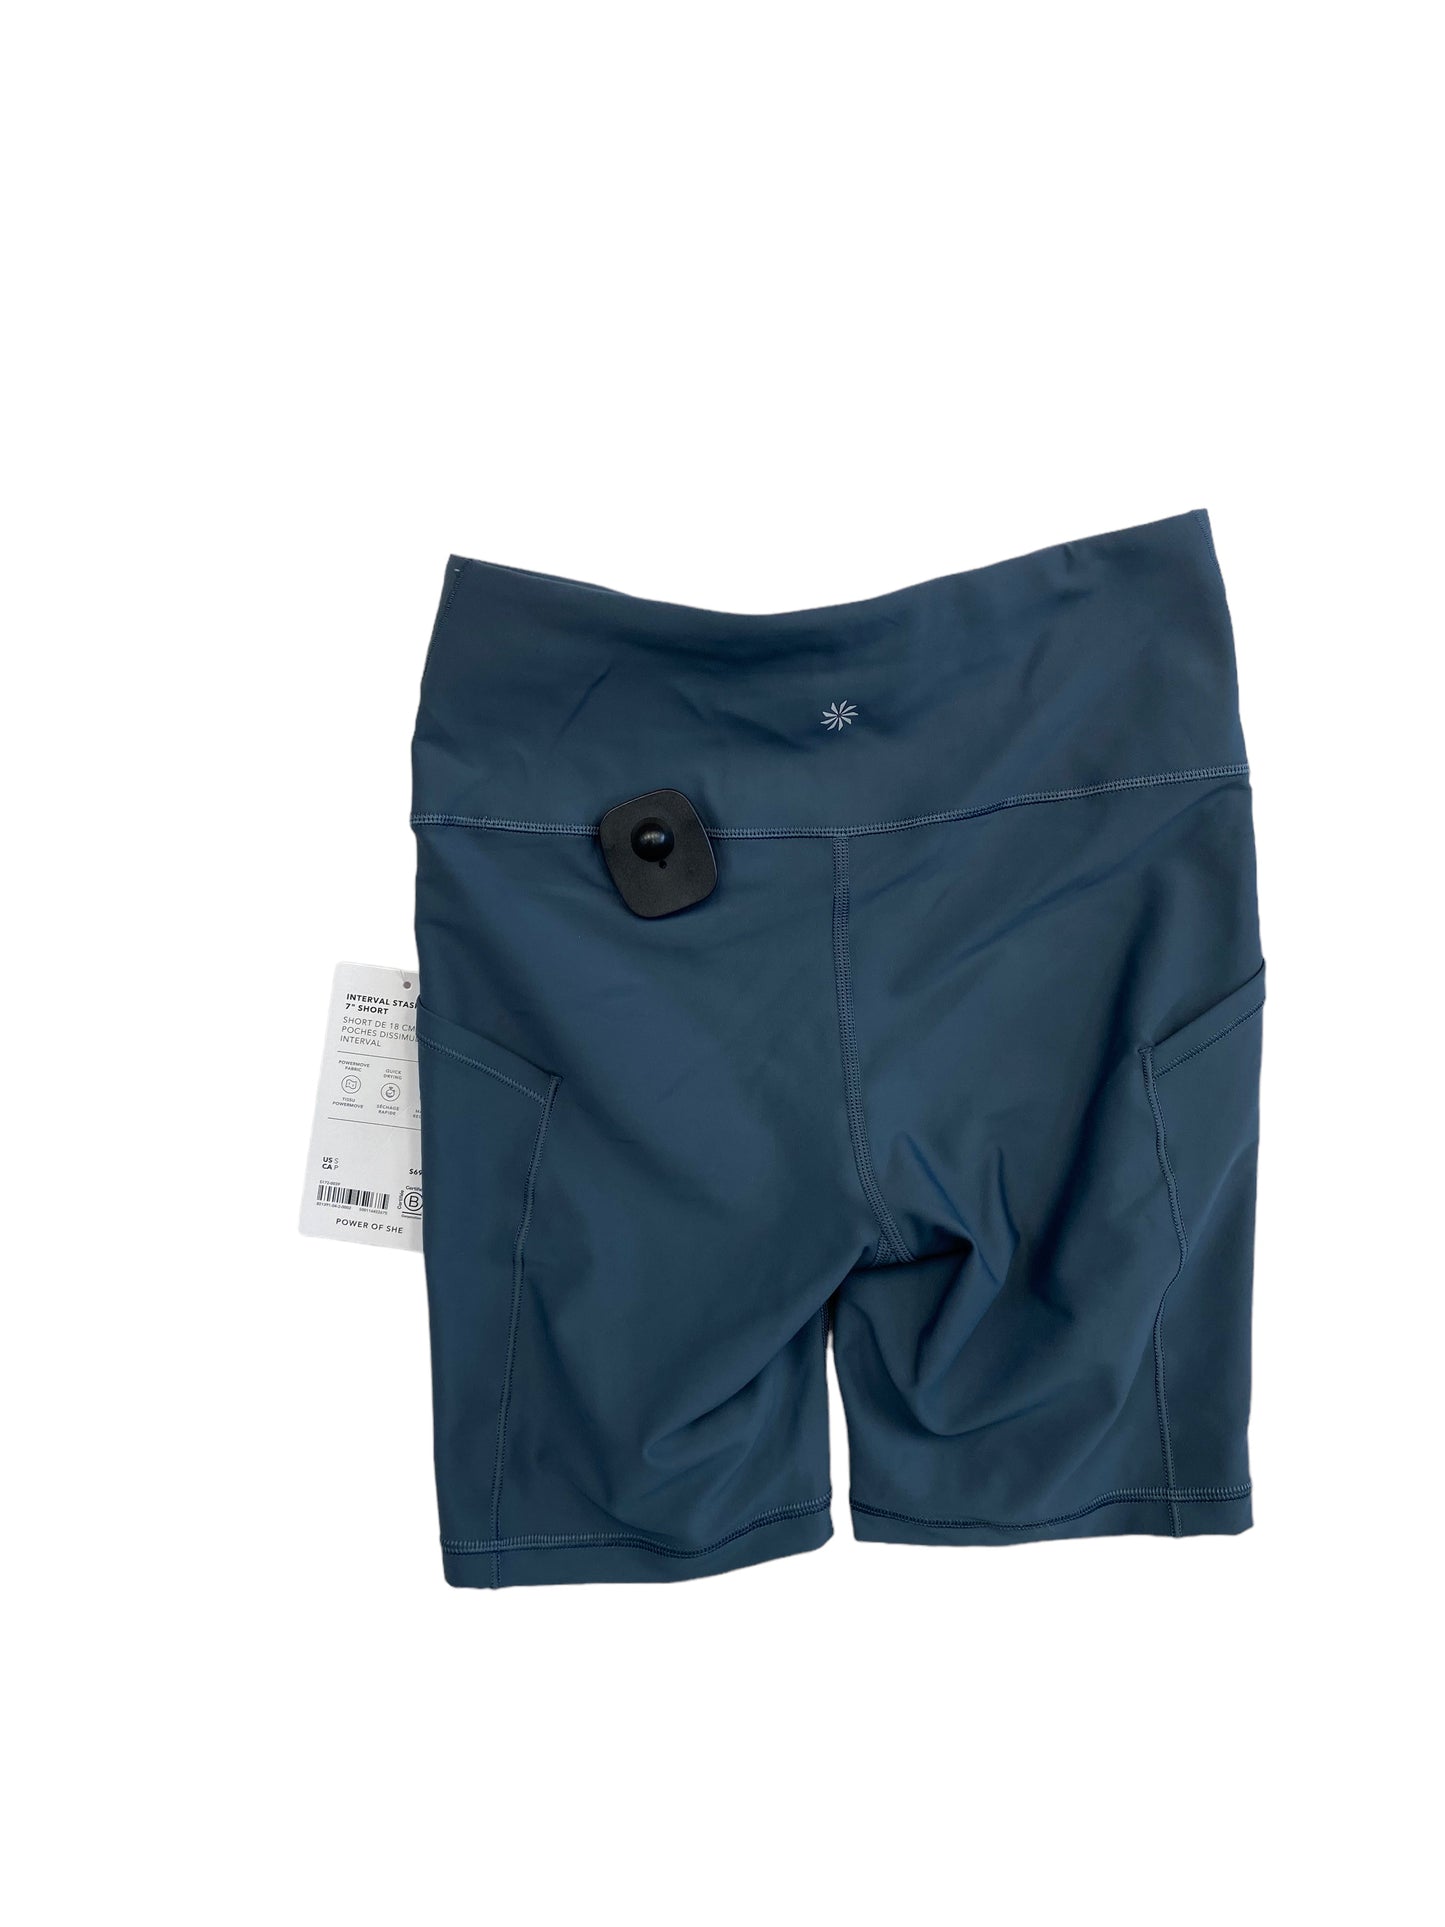 Blue Athletic Shorts Athleta, Size S